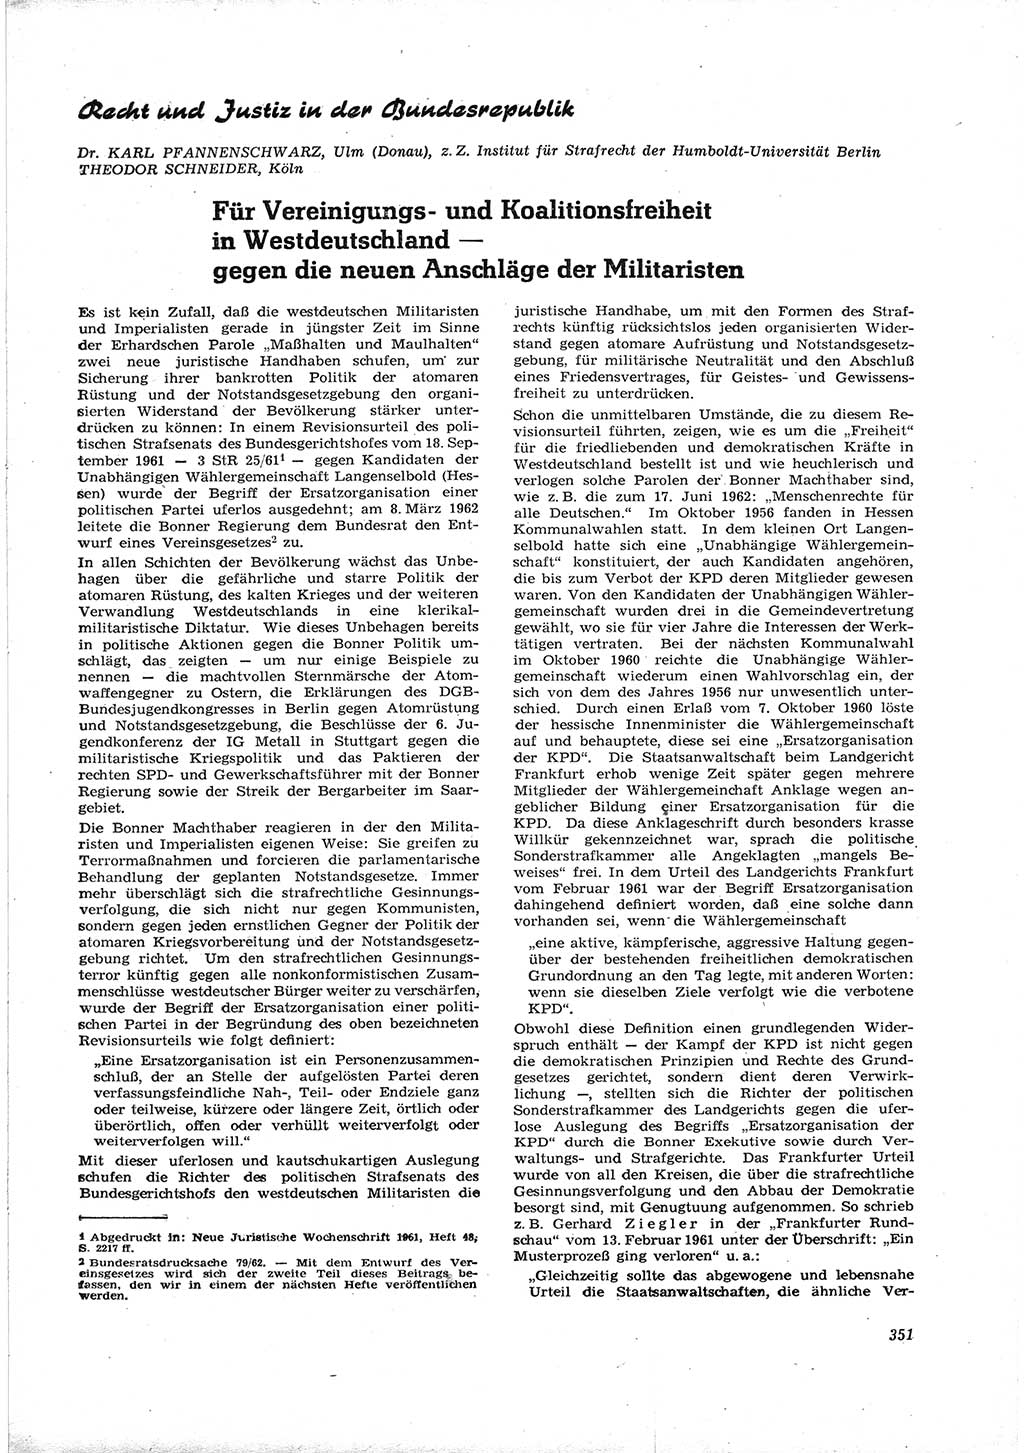 Neue Justiz (NJ), Zeitschrift für Recht und Rechtswissenschaft [Deutsche Demokratische Republik (DDR)], 16. Jahrgang 1962, Seite 351 (NJ DDR 1962, S. 351)